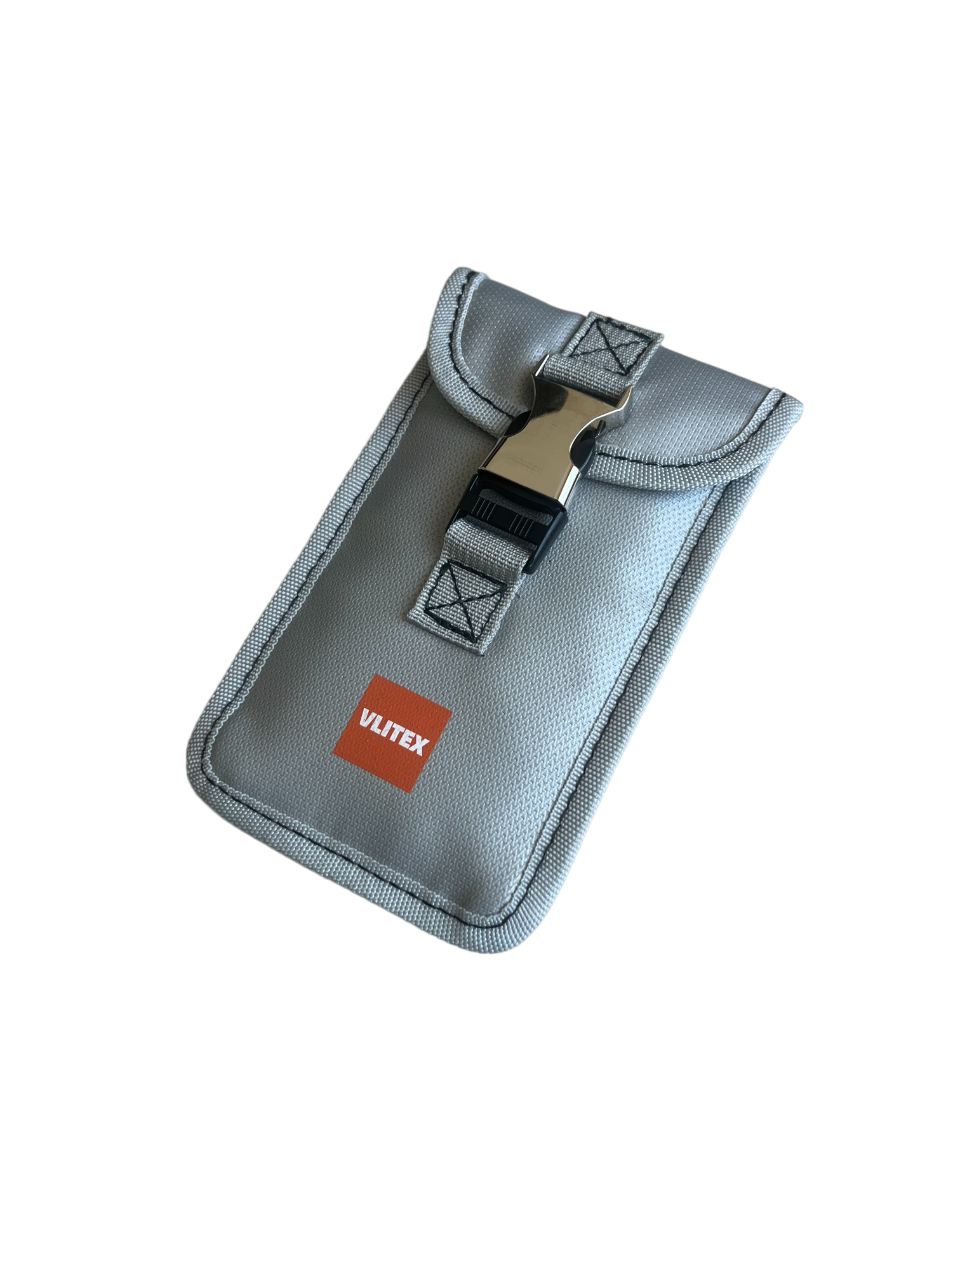 VLITEX Smartphonetasche aus silikonbeschichtetem Glasfasergewebe in silbergrau mit VLITEX Logo